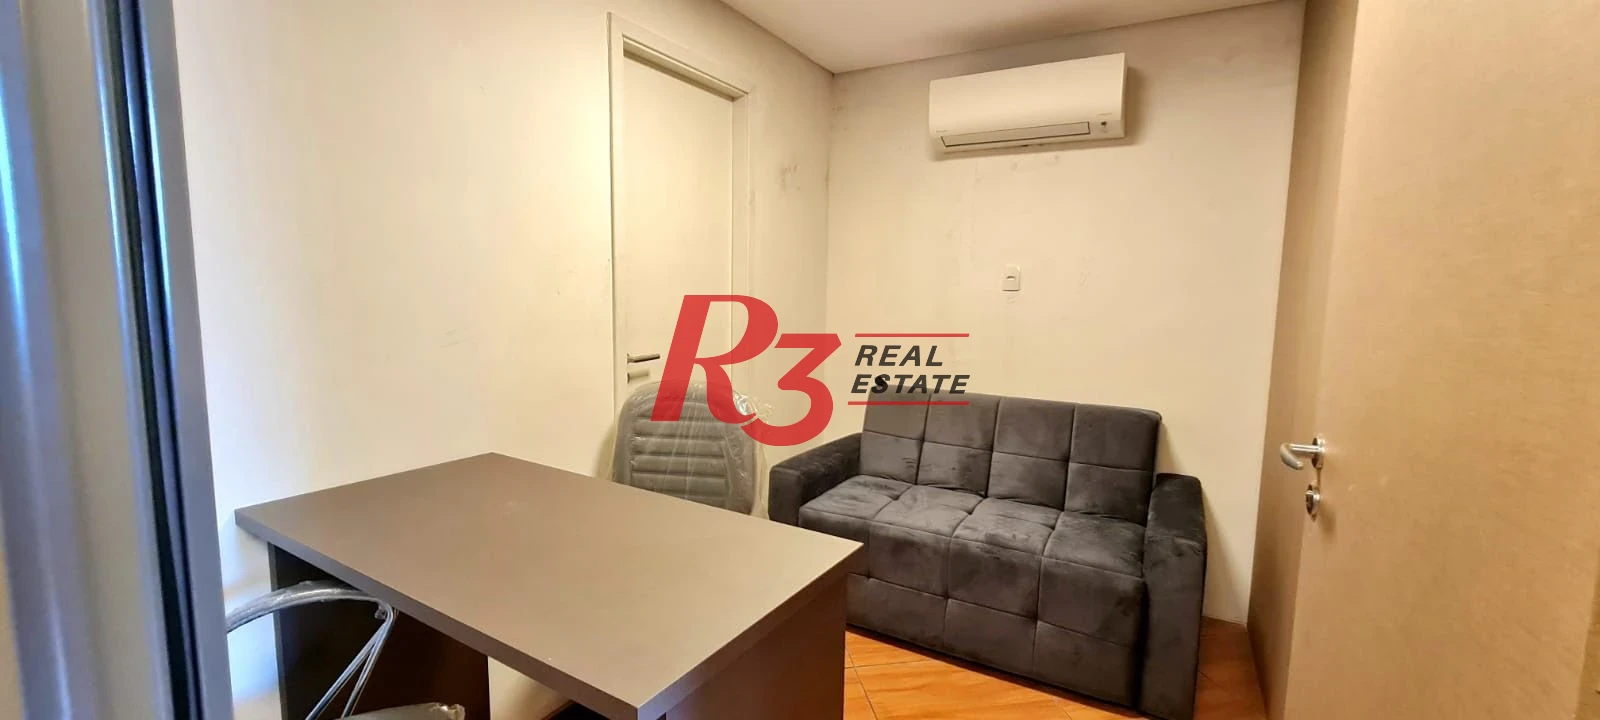 Sala para alugar, 10 m² por R$ 2.500,00/mês - Valongo - Santos/SP